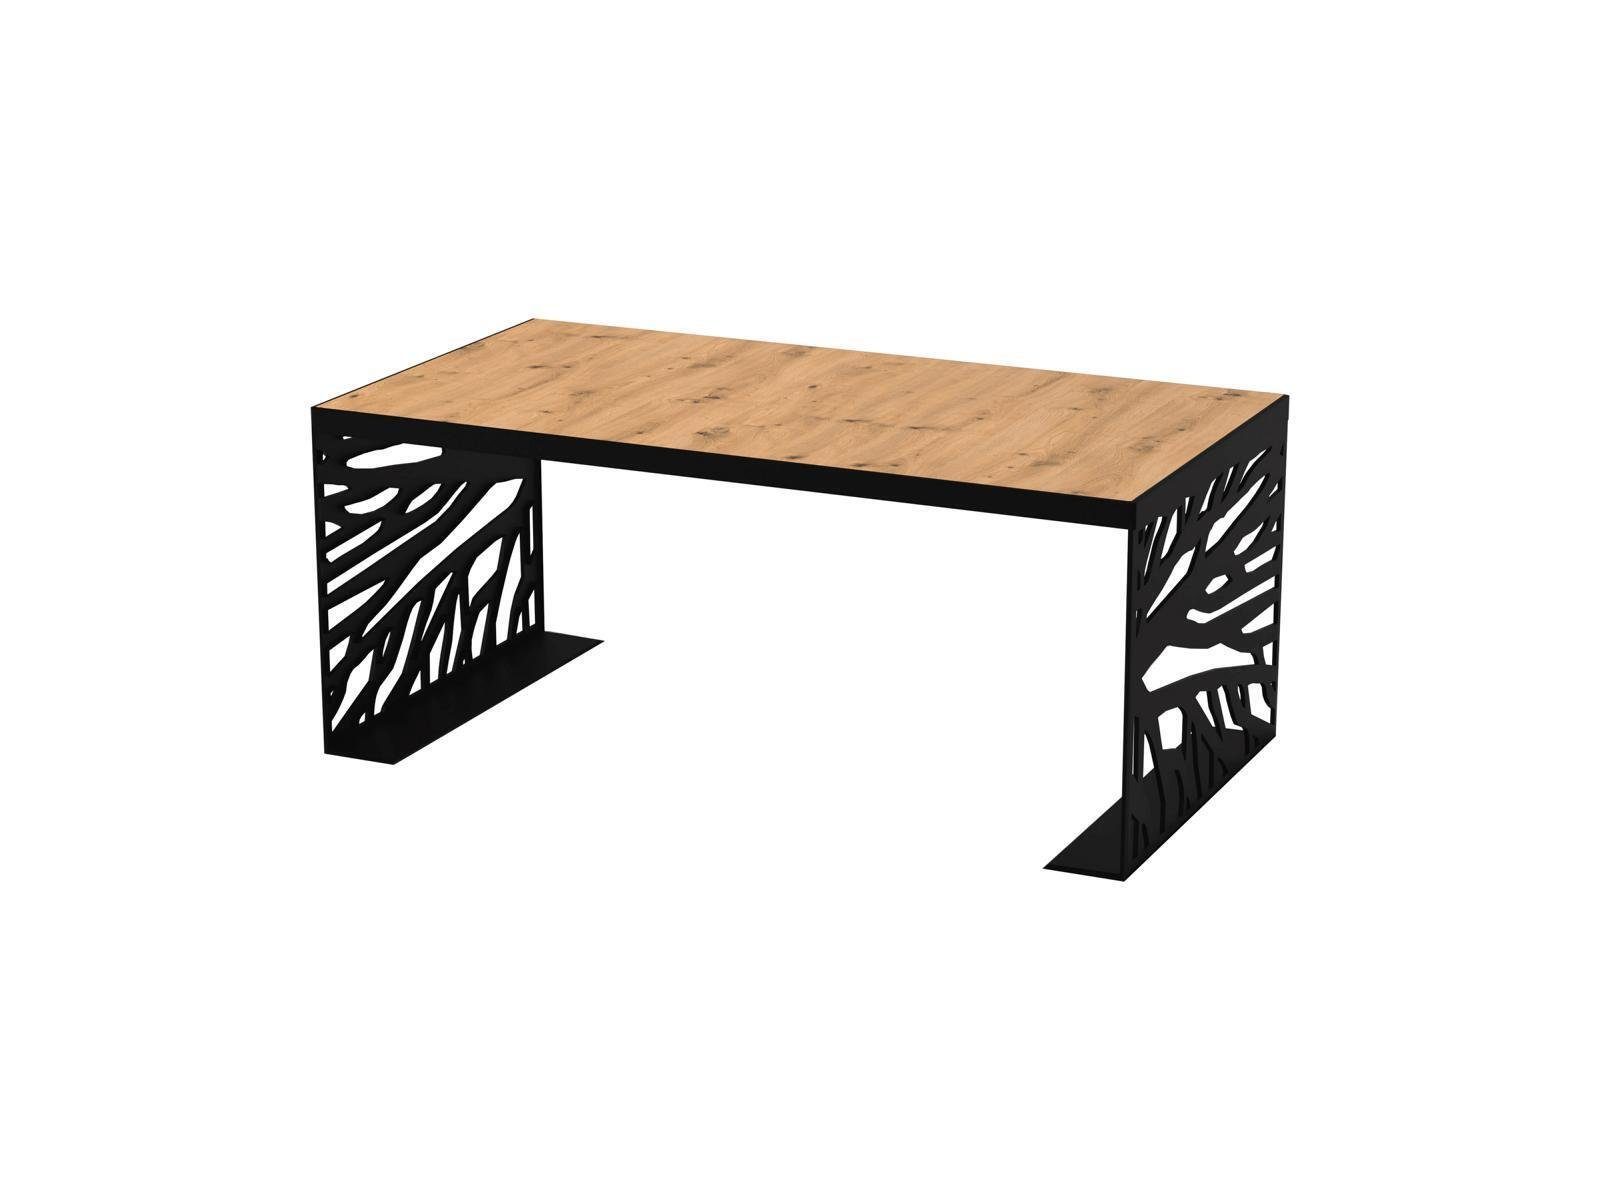 JVmoebel Couchtisch Design Tische Möbel Tisch Luxus Beistelltisch Holz Modern Couchtisch, Design Tische Möbel Tisch Luxus Beistelltisch Holz Modern Couchtisch